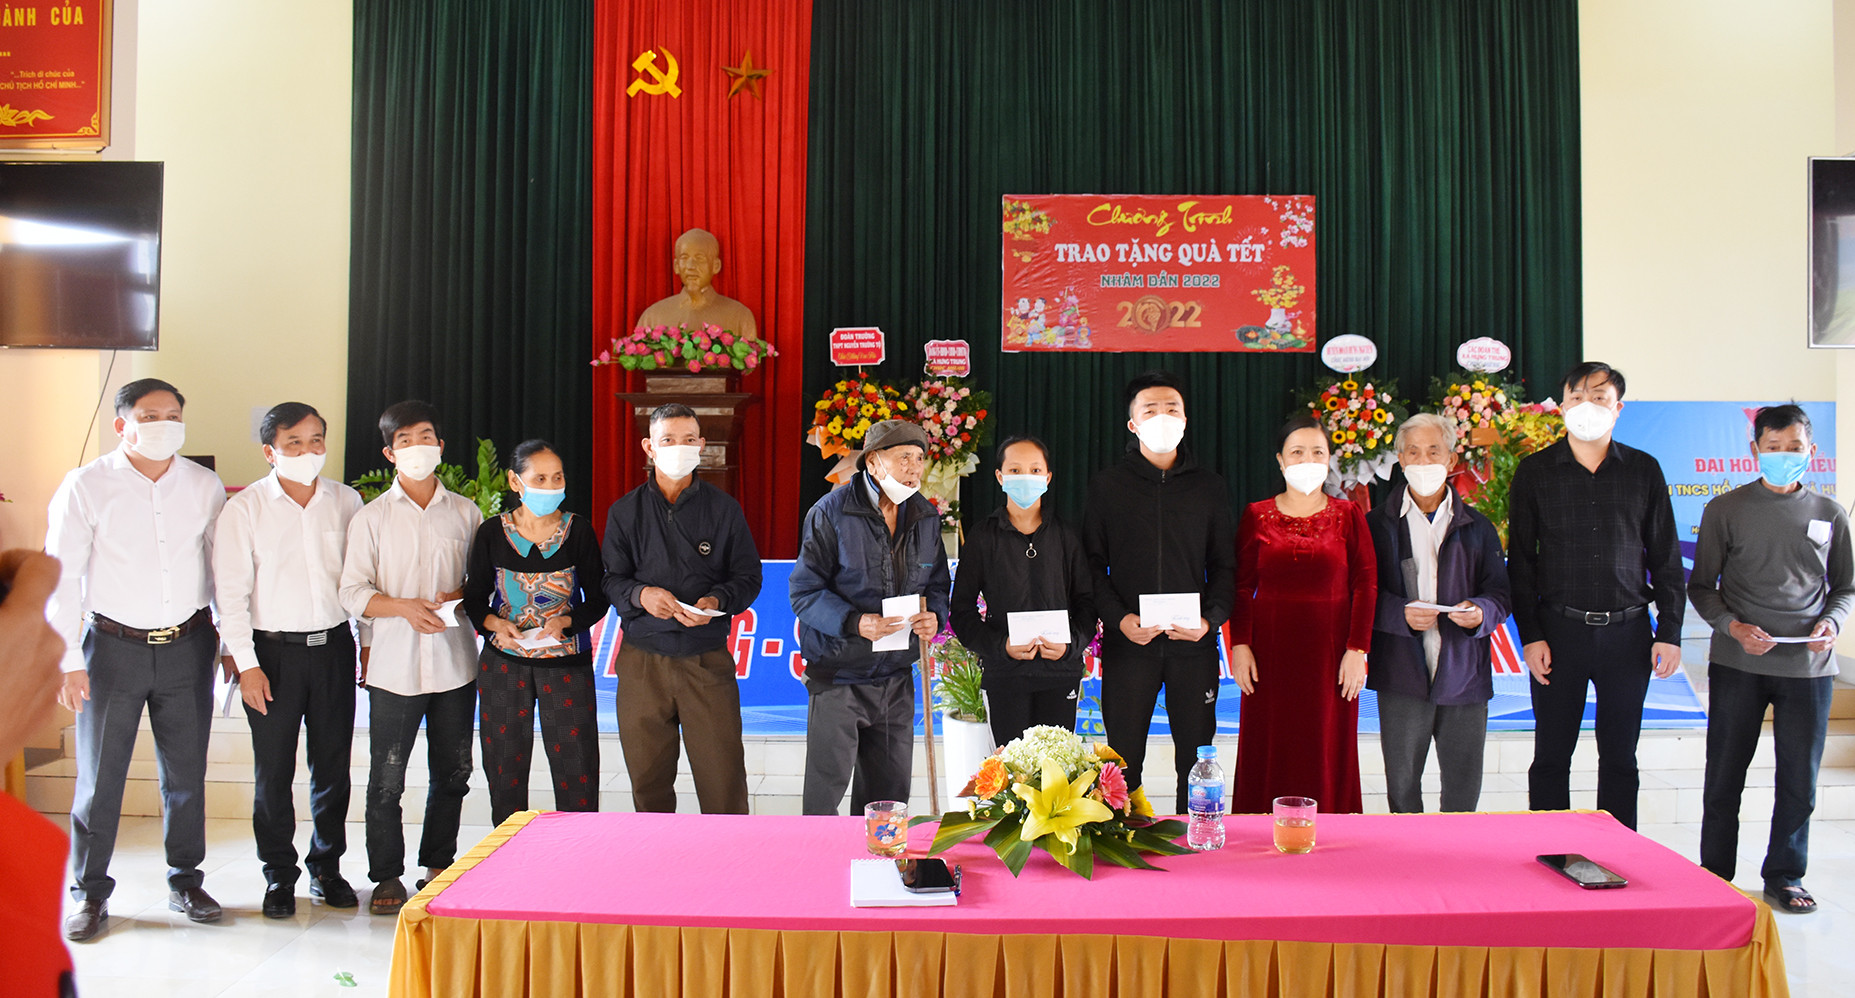 Đoàn trao tặng quà Tết cho các hộ nghèo xã Hưng Trung, huyện Hưng Nguyên. Ảnh: Thanh Lê